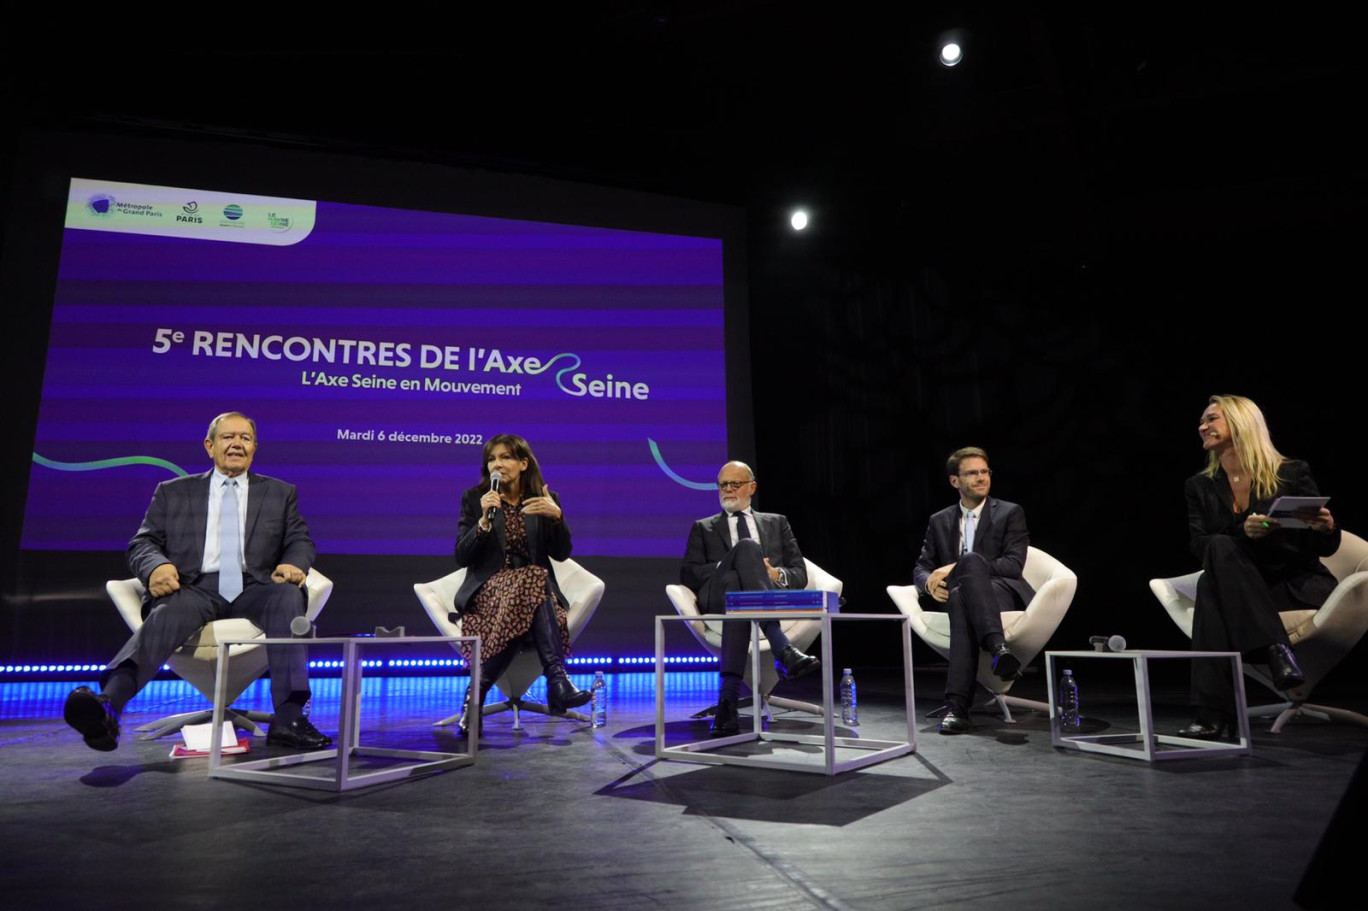 La 5e Rencontre de l'Axe Seine a eu lieu mardi 6 décembre à Paris. (Photo DR)